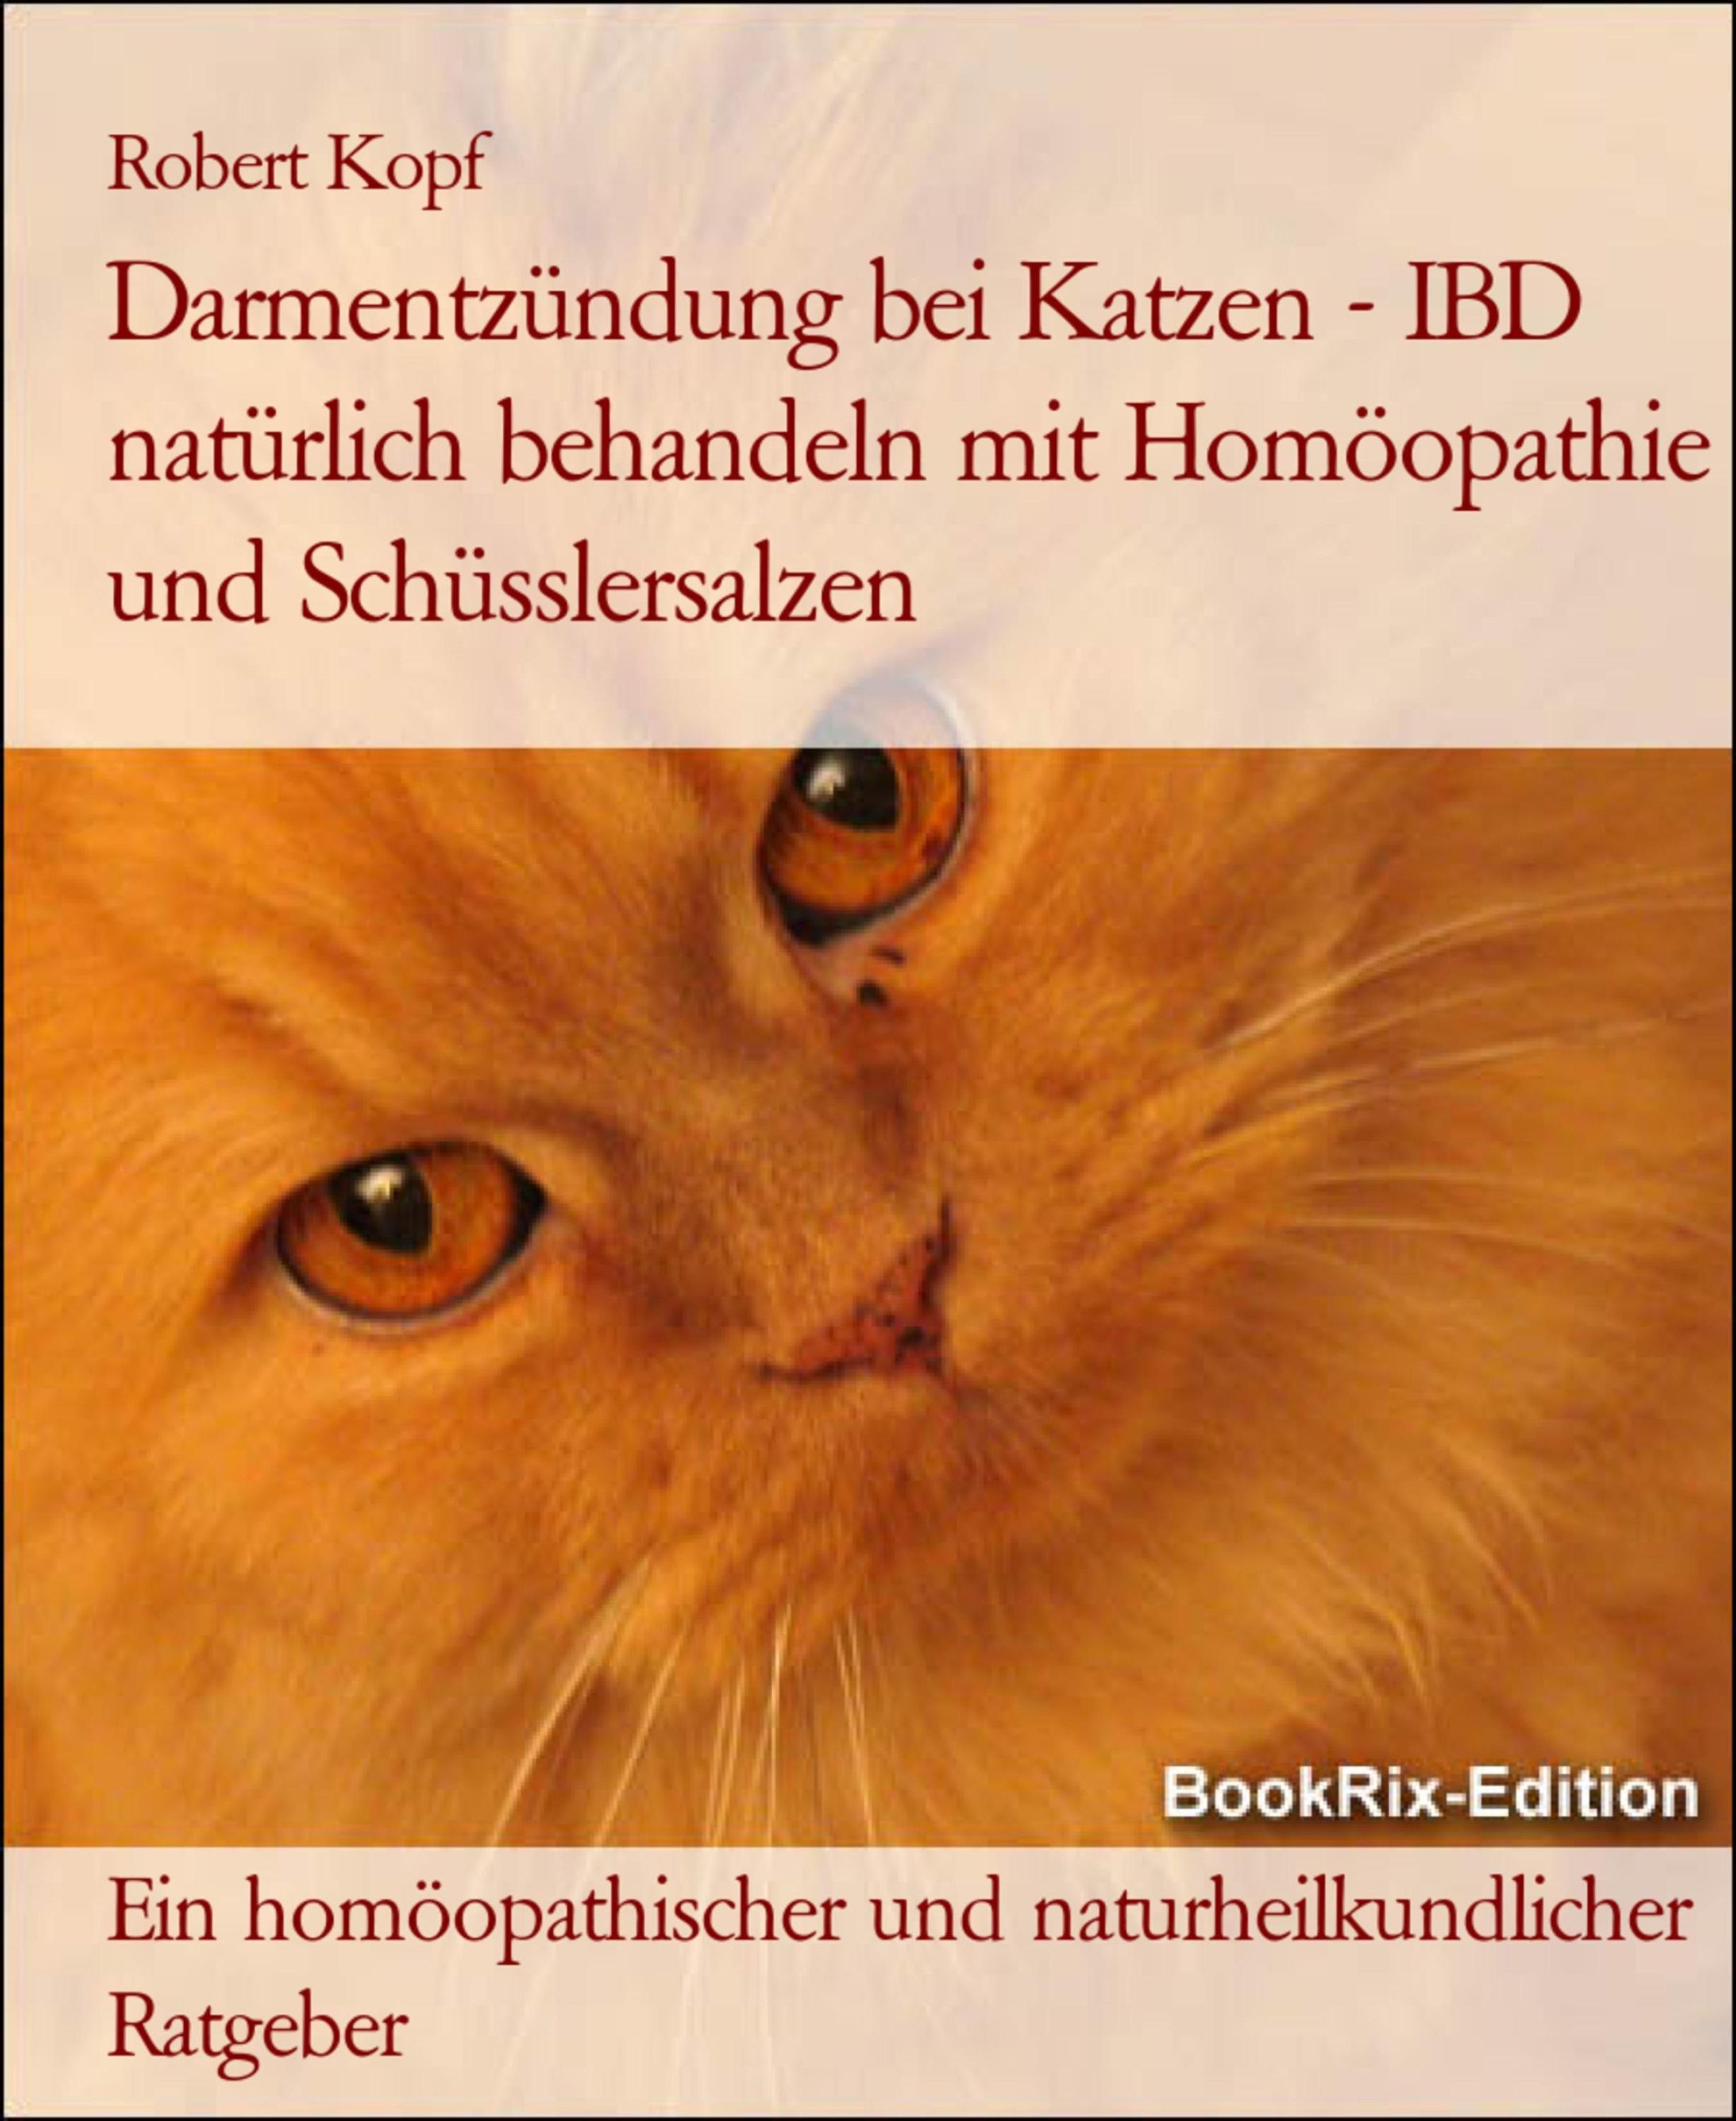 Darmentzündung bei Katzen IBD behandeln mit Homöopathie und Schüsslersalzen  eBook v. Robert Kopf | Weltbild